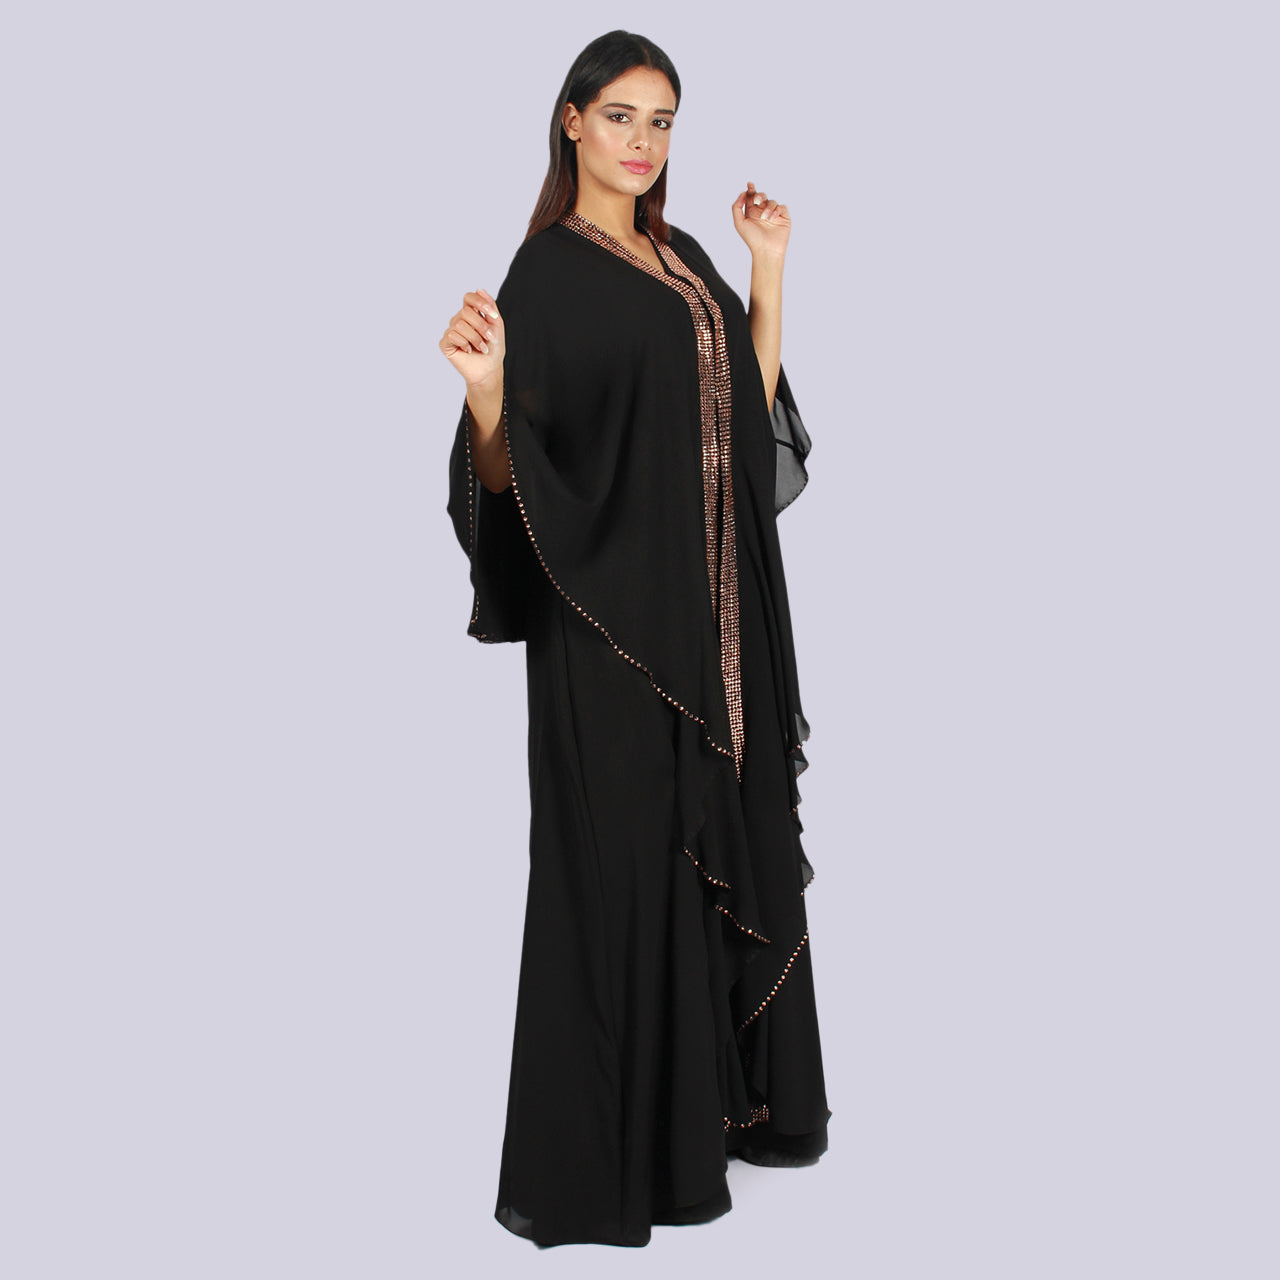 Rosaline - Flared Sleeve Rhinestone Embellished Abaya